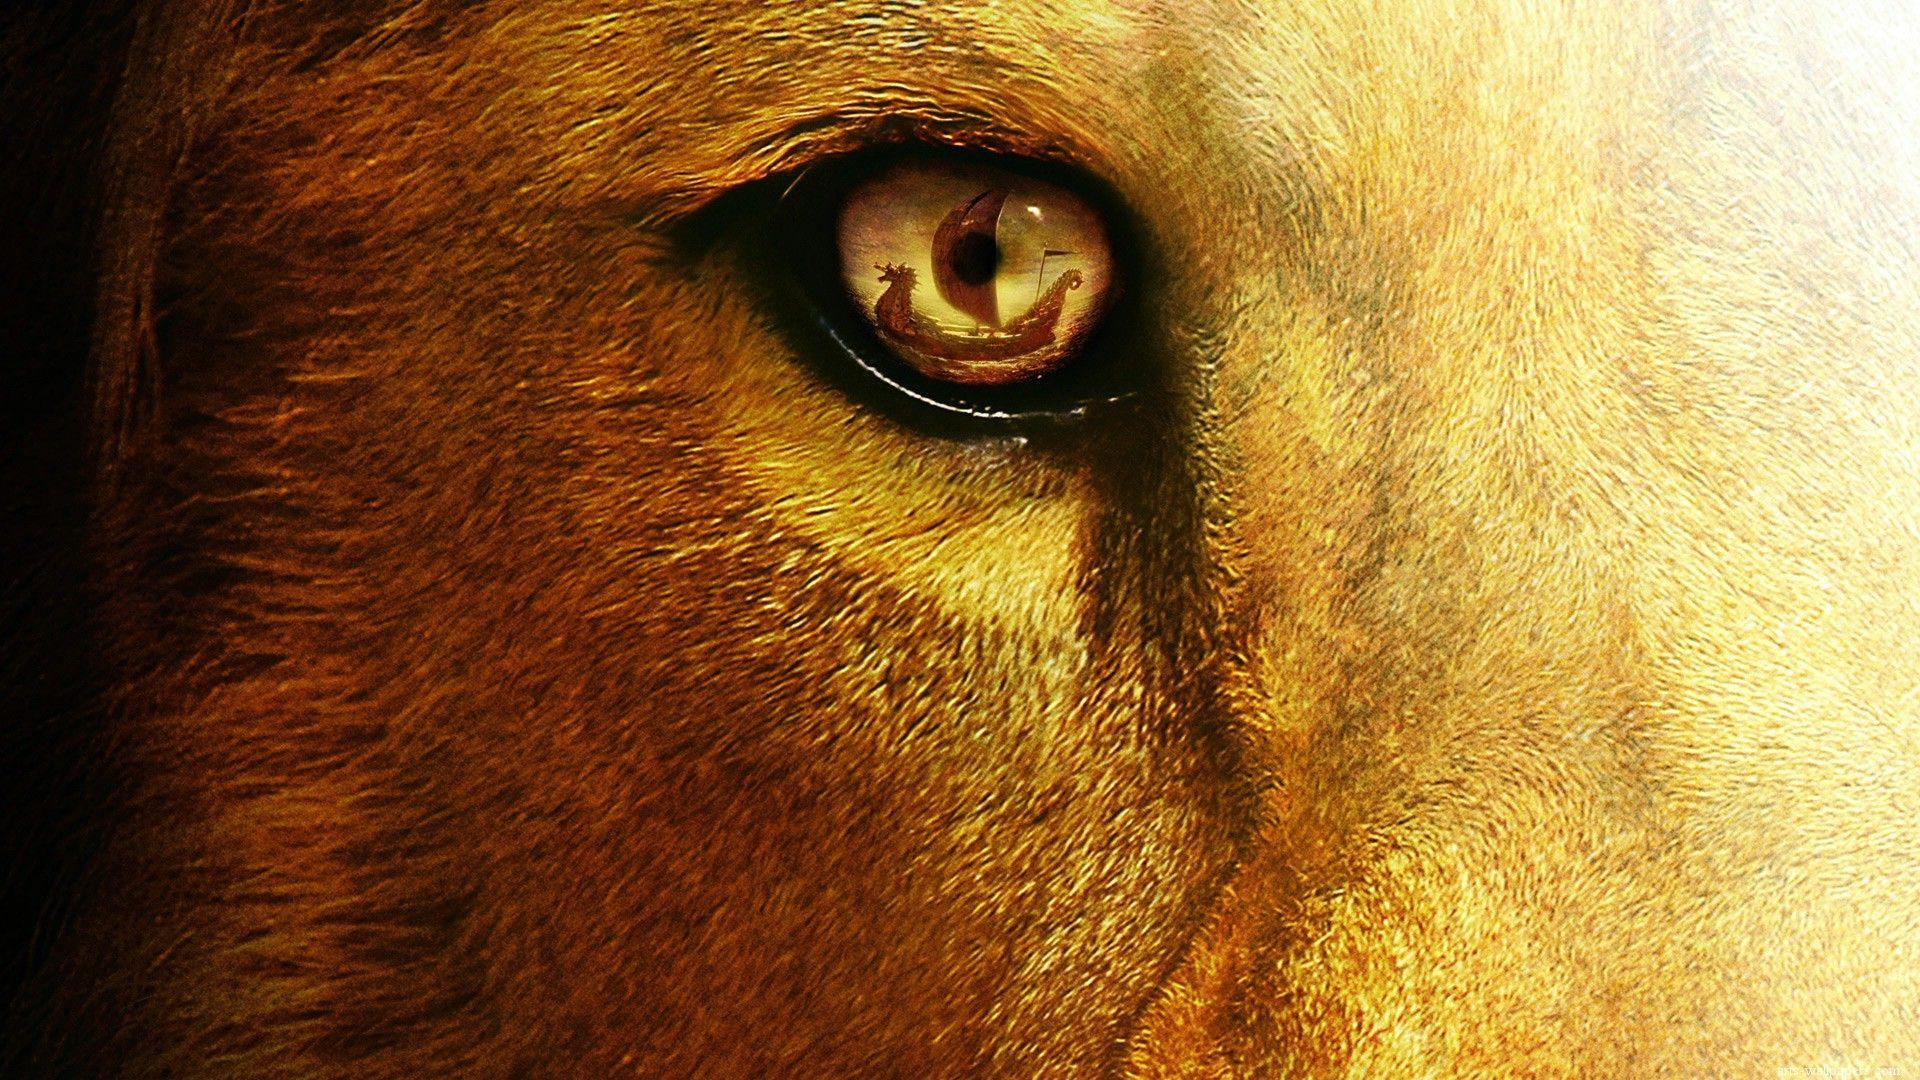 aslan lion wallpaper